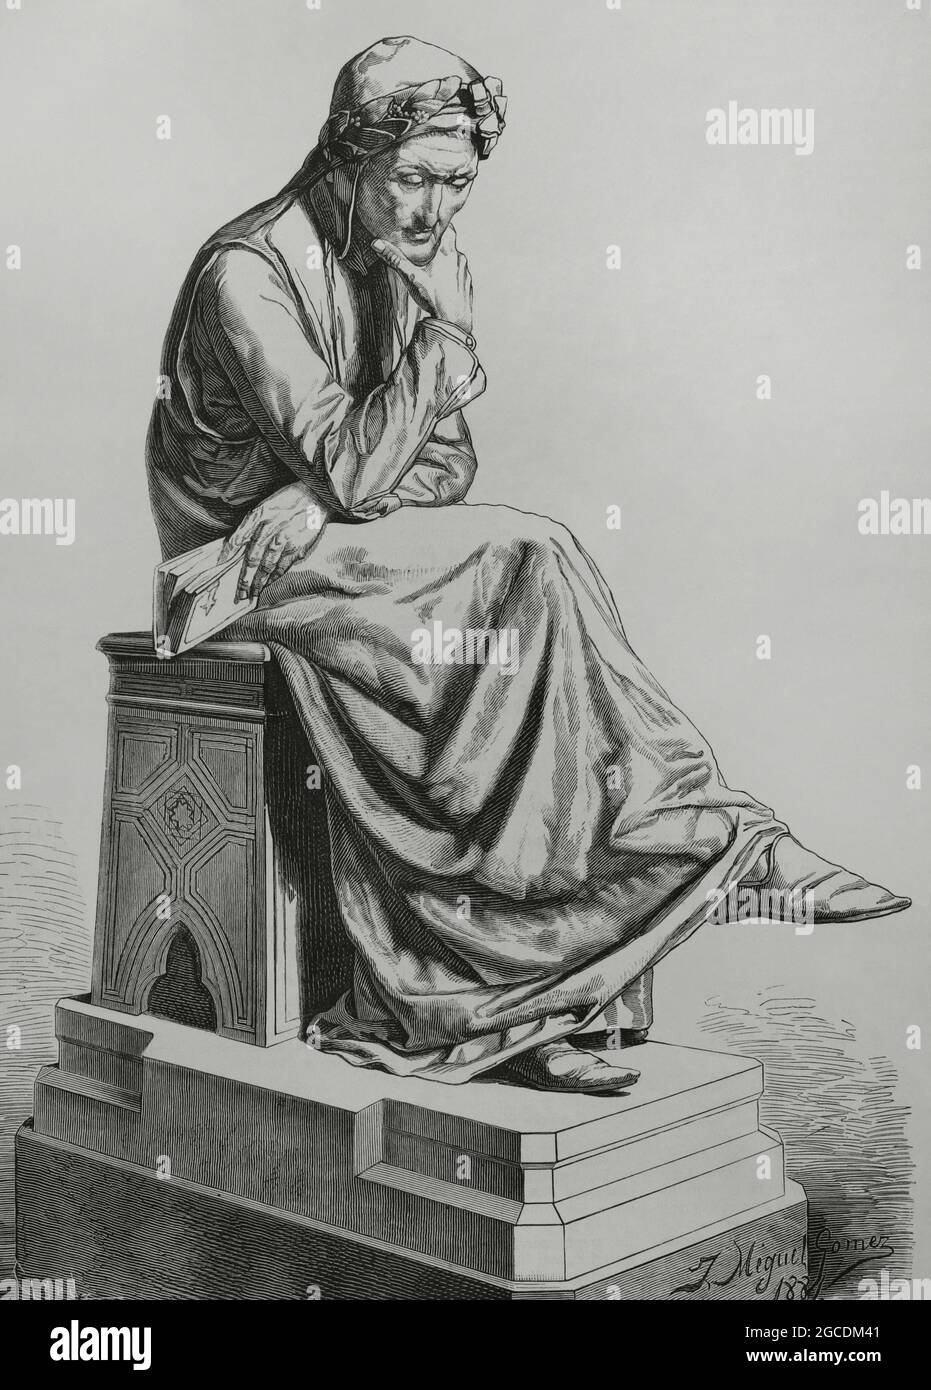 Dante Alighieri (1265-1321). Italian poet, author of the Divine Comedy. Drawing by J. Miguel Gómez after a sculpture by Jerónimo Suñol (1839-1902) in 1864. Engraving by Capuz. La Ilustración Española y Americana, 1882. Stock Photo